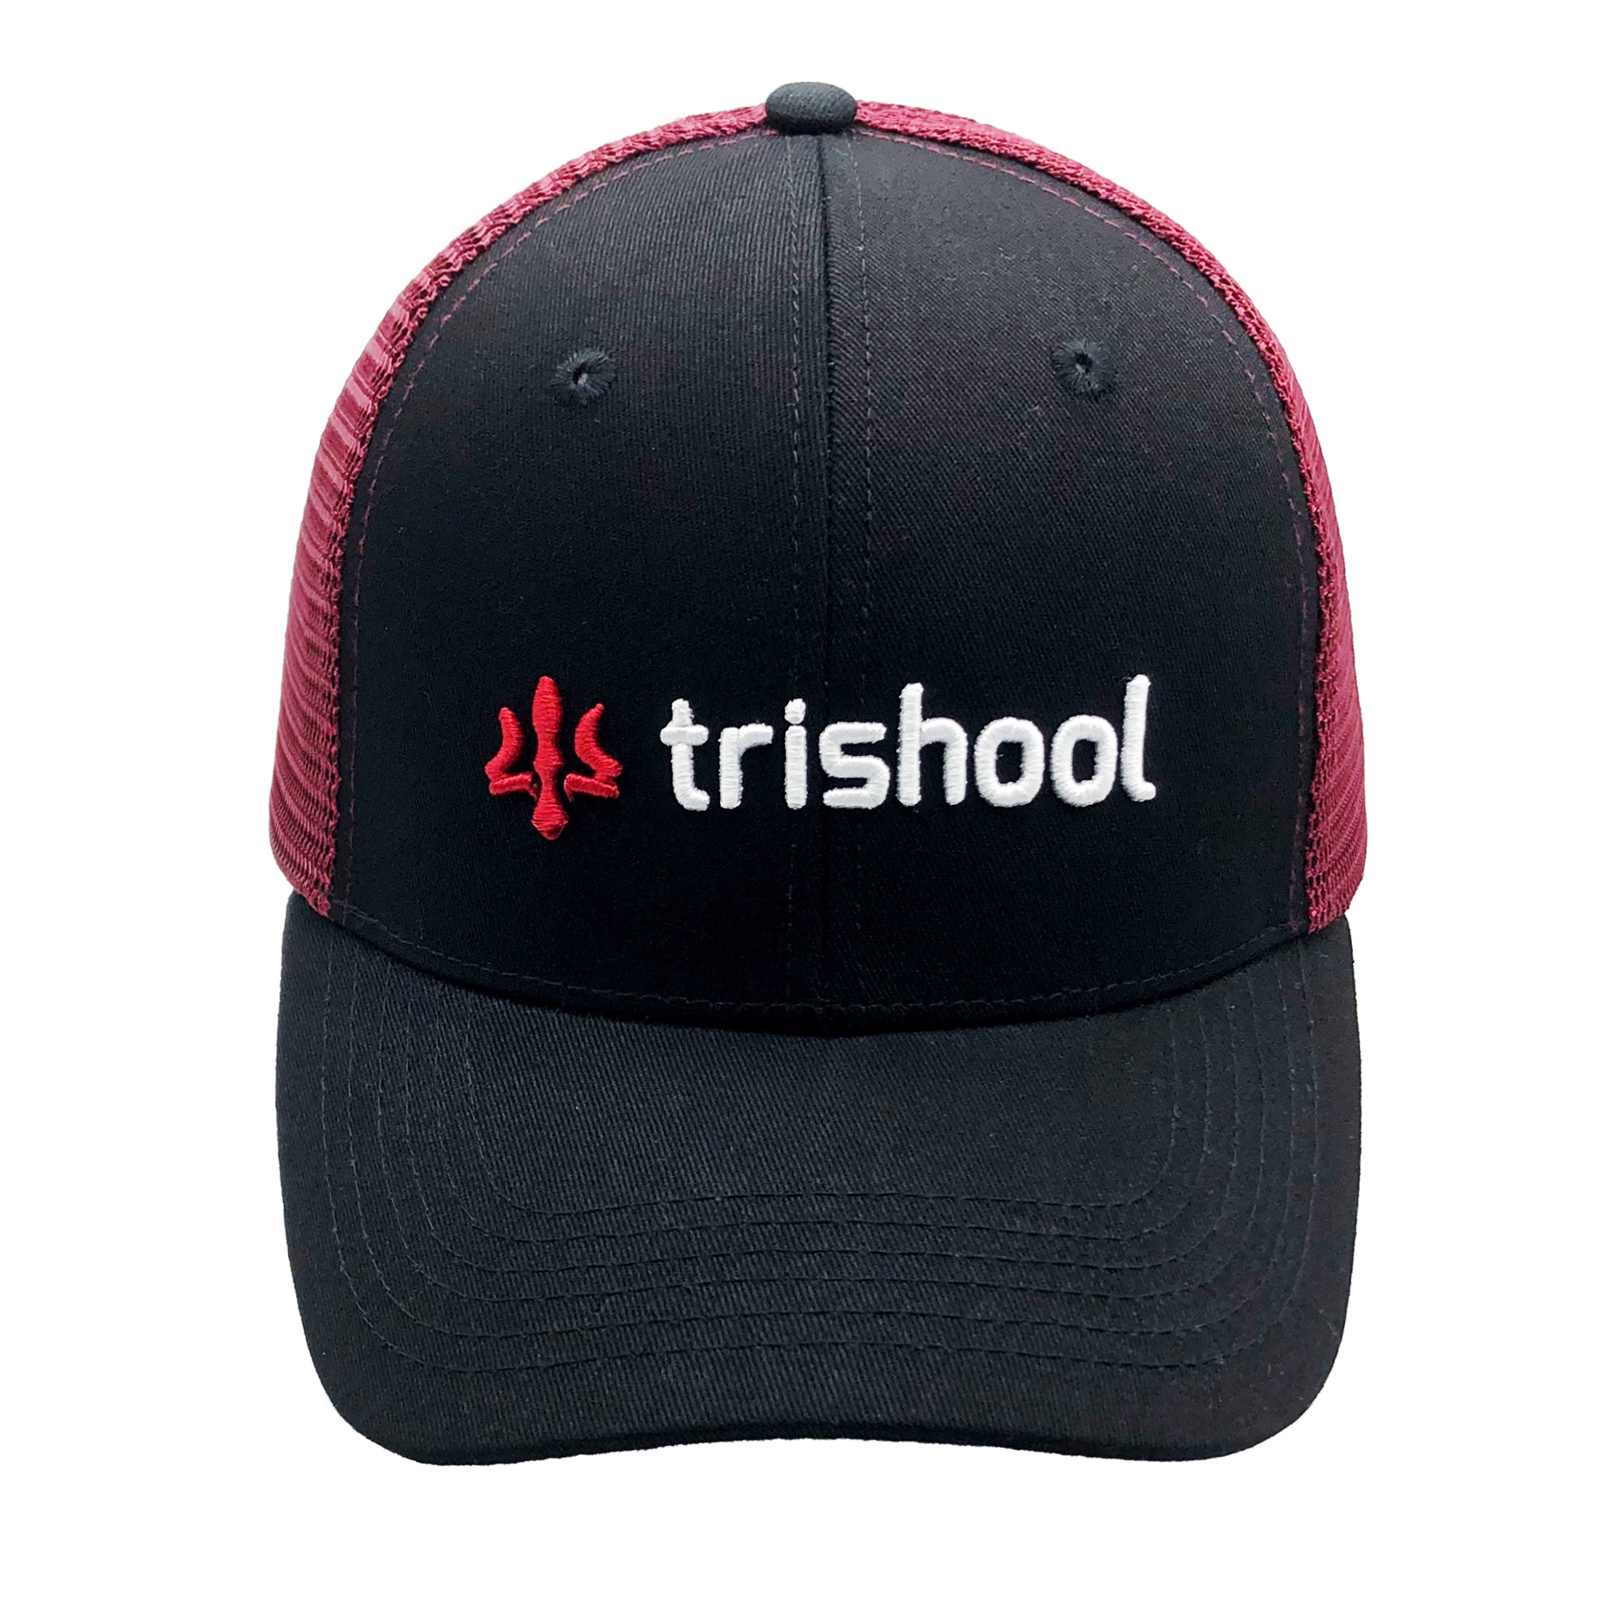 Trishool Signature Adjustable Cap